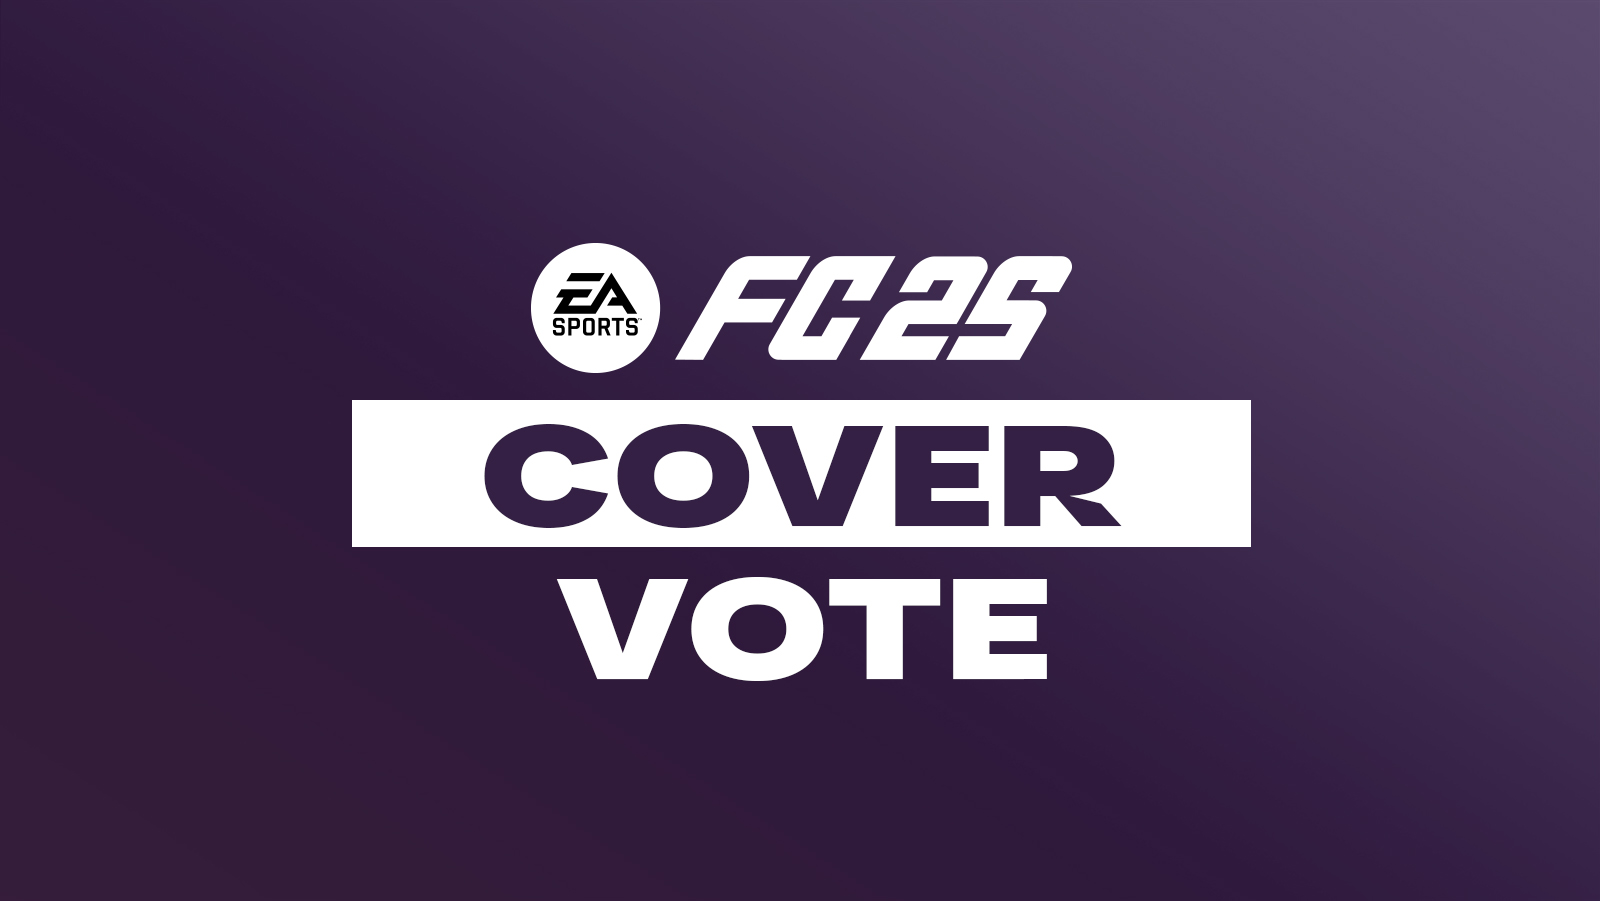 Vote for EA FC 25 Cover Stars